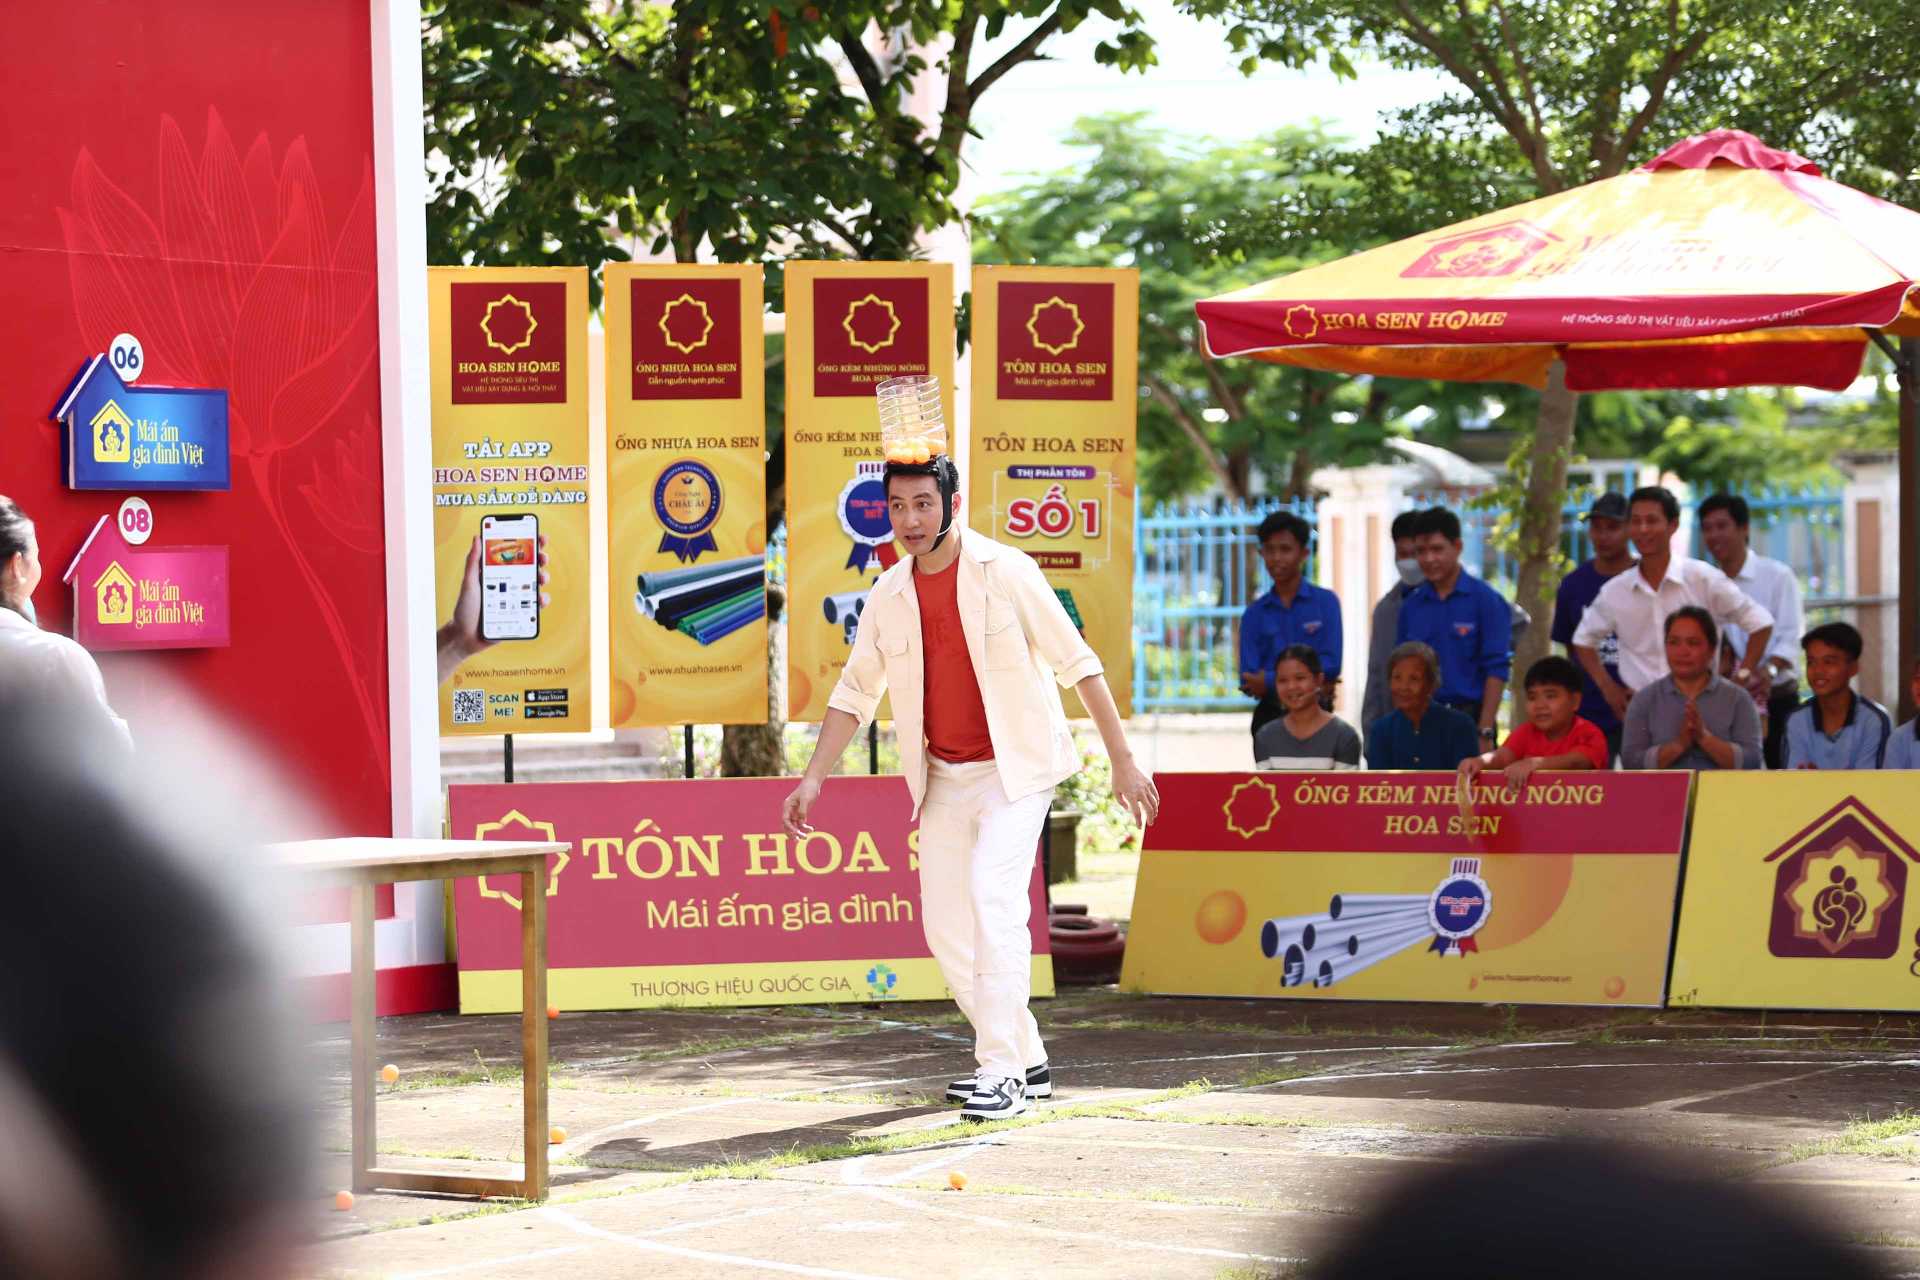 Sau các vòng thi, Nguyễn Phi Hùng ngồi nghỉ ngơi trong hậu trường với sự chăm sóc đặc biệt của khán giả, người quạt, người đưa nước để nam ca sĩ nhanh phục hồi thể lực tiếp tục cuộc chơi.